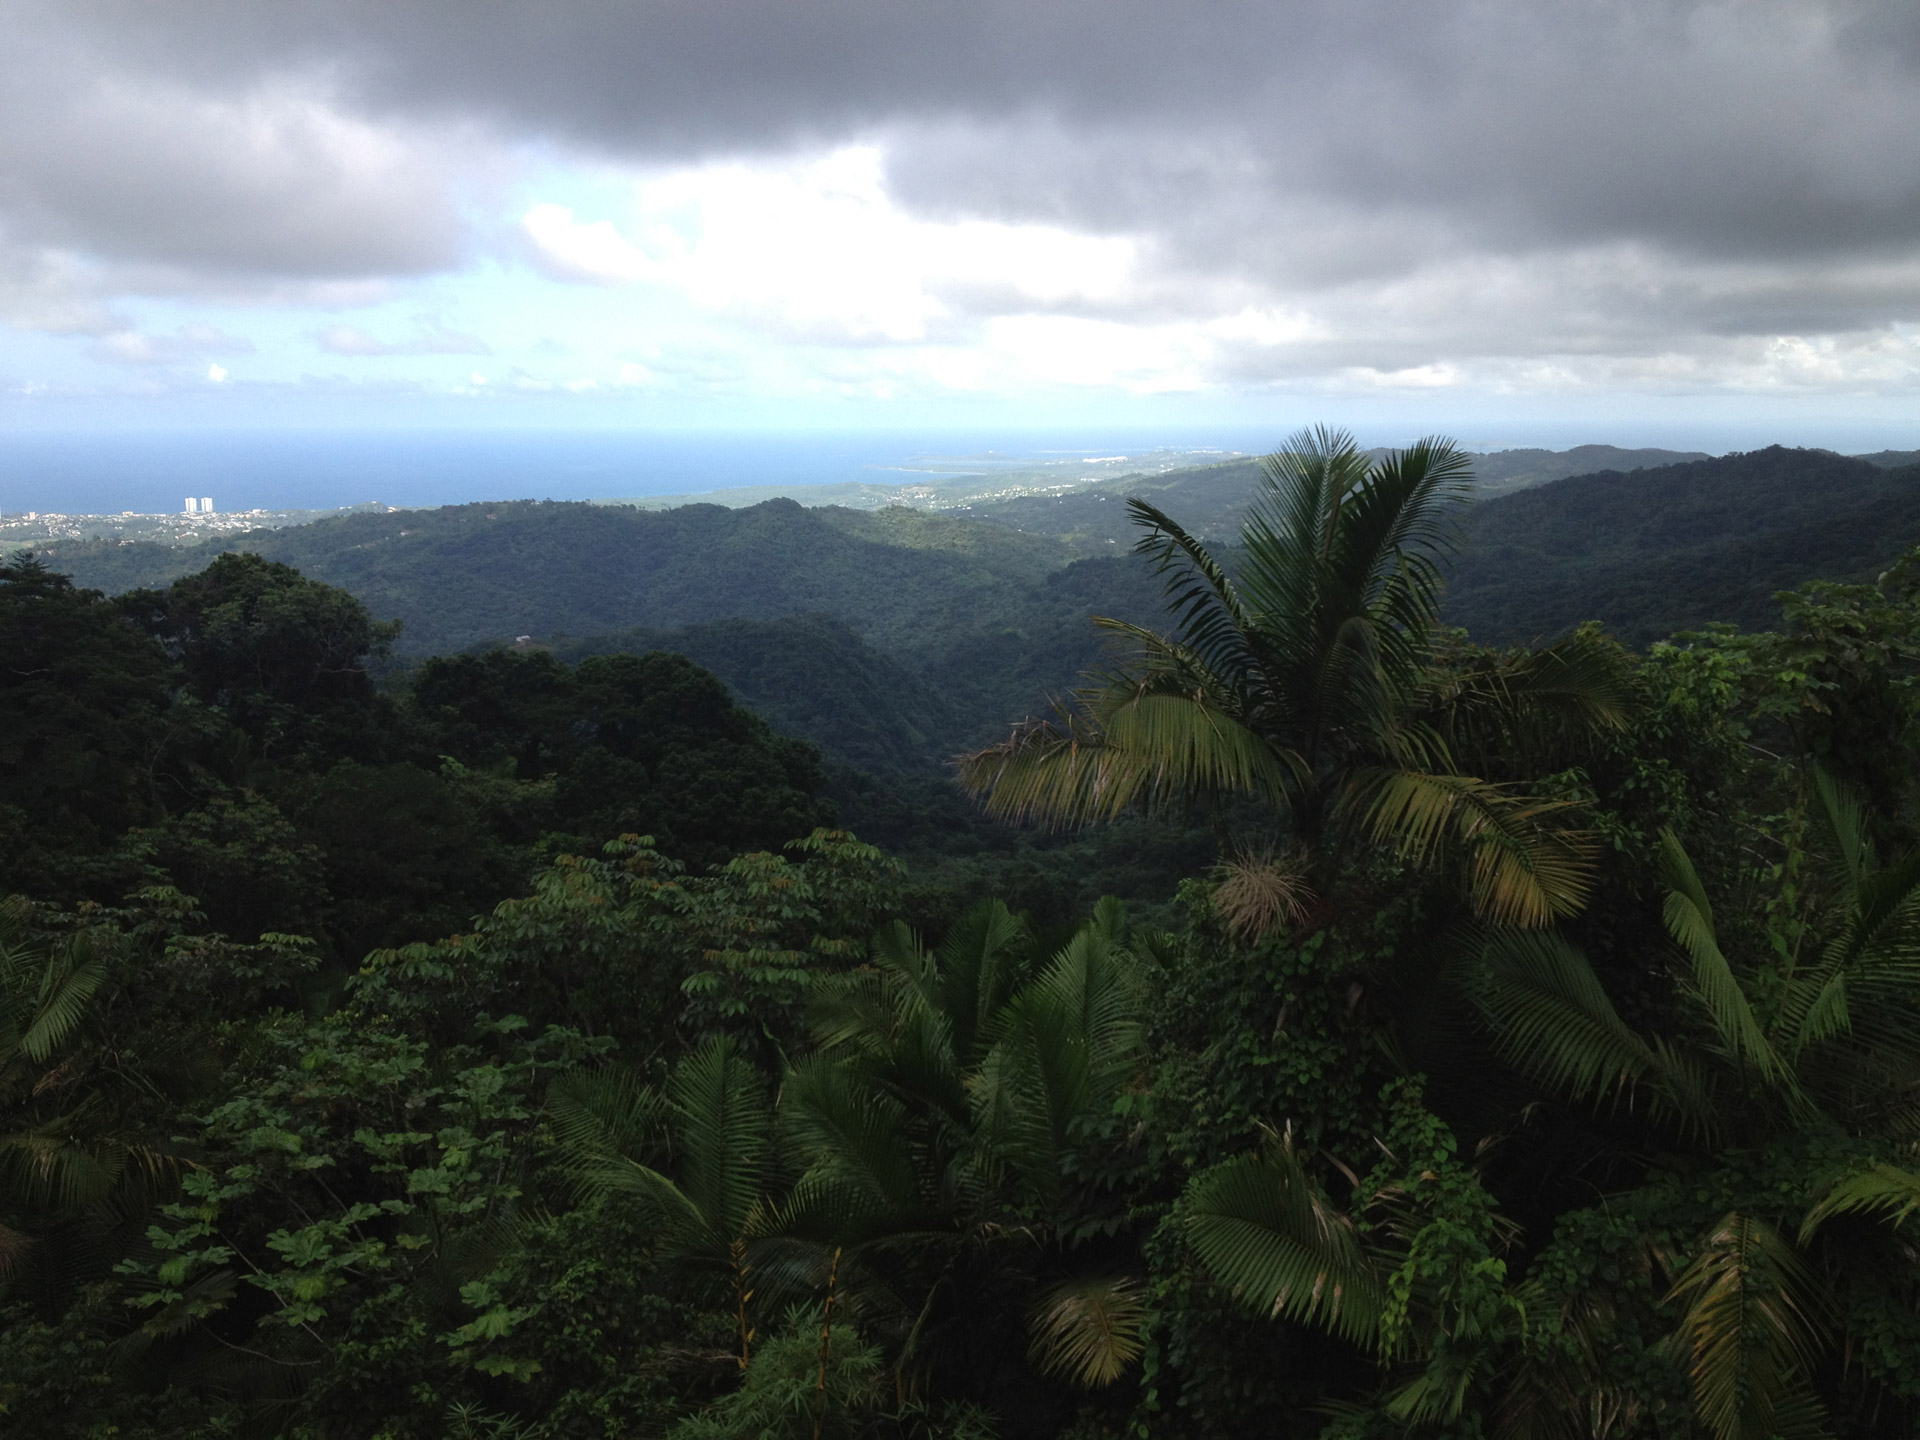 Tropical rainforest overlooking ocean, El Yunque, Puerto Rico